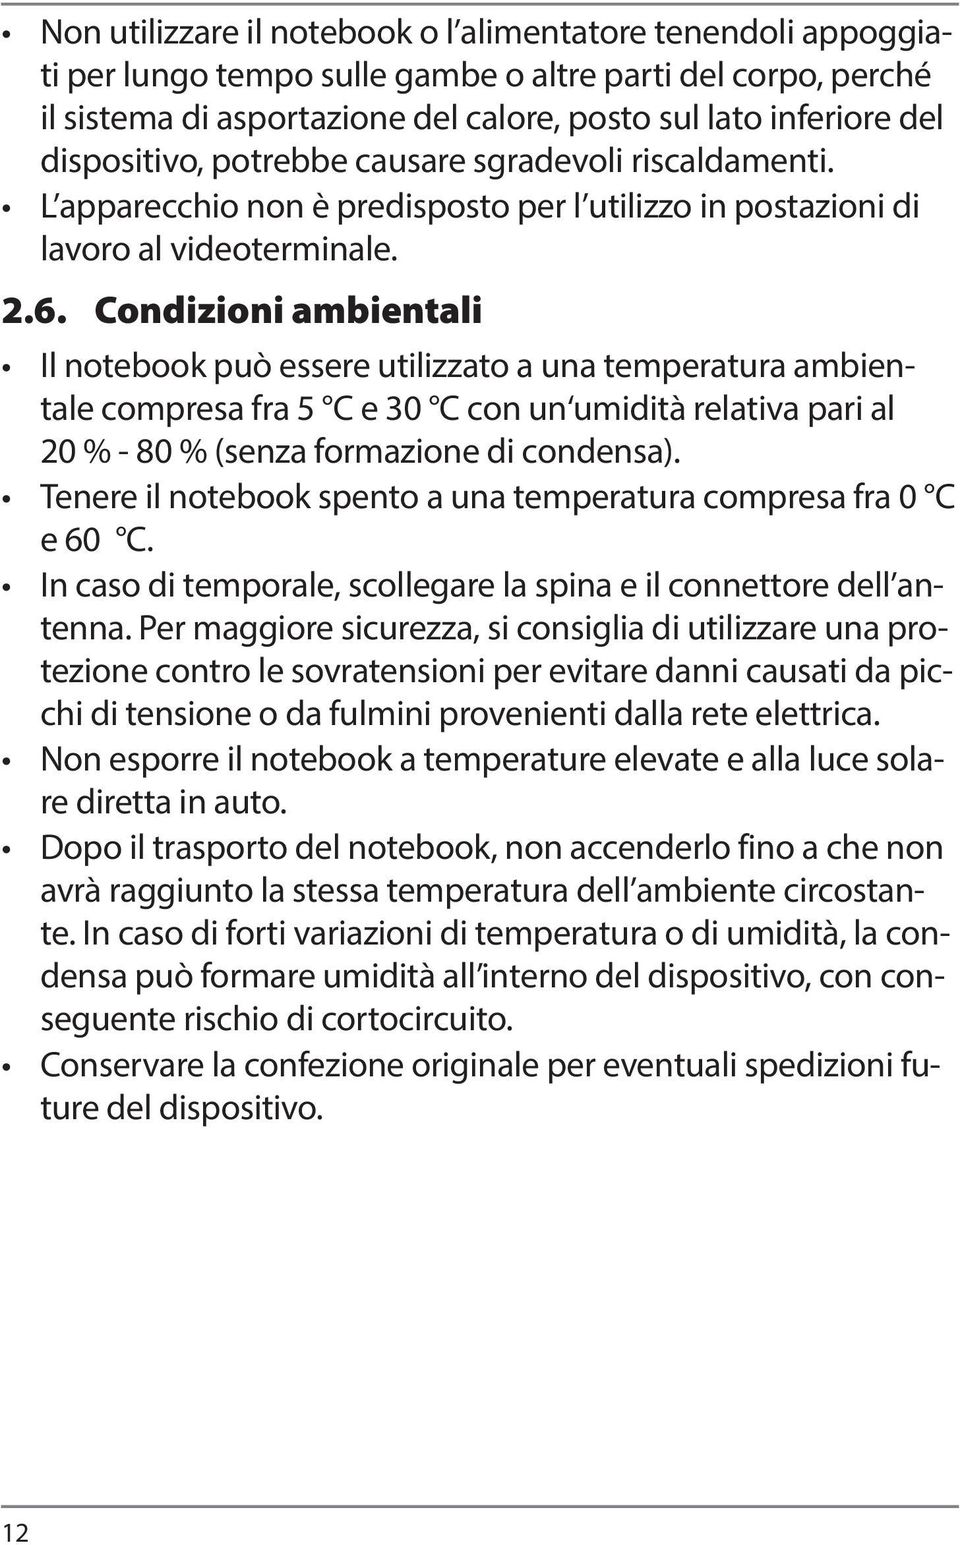 Condizioni ambientali Il notebook può essere utilizzato a una temperatura ambientale compresa fra 5 C e 30 C con un umidità relativa pari al 20 % - 80 % (senza formazione di condensa).